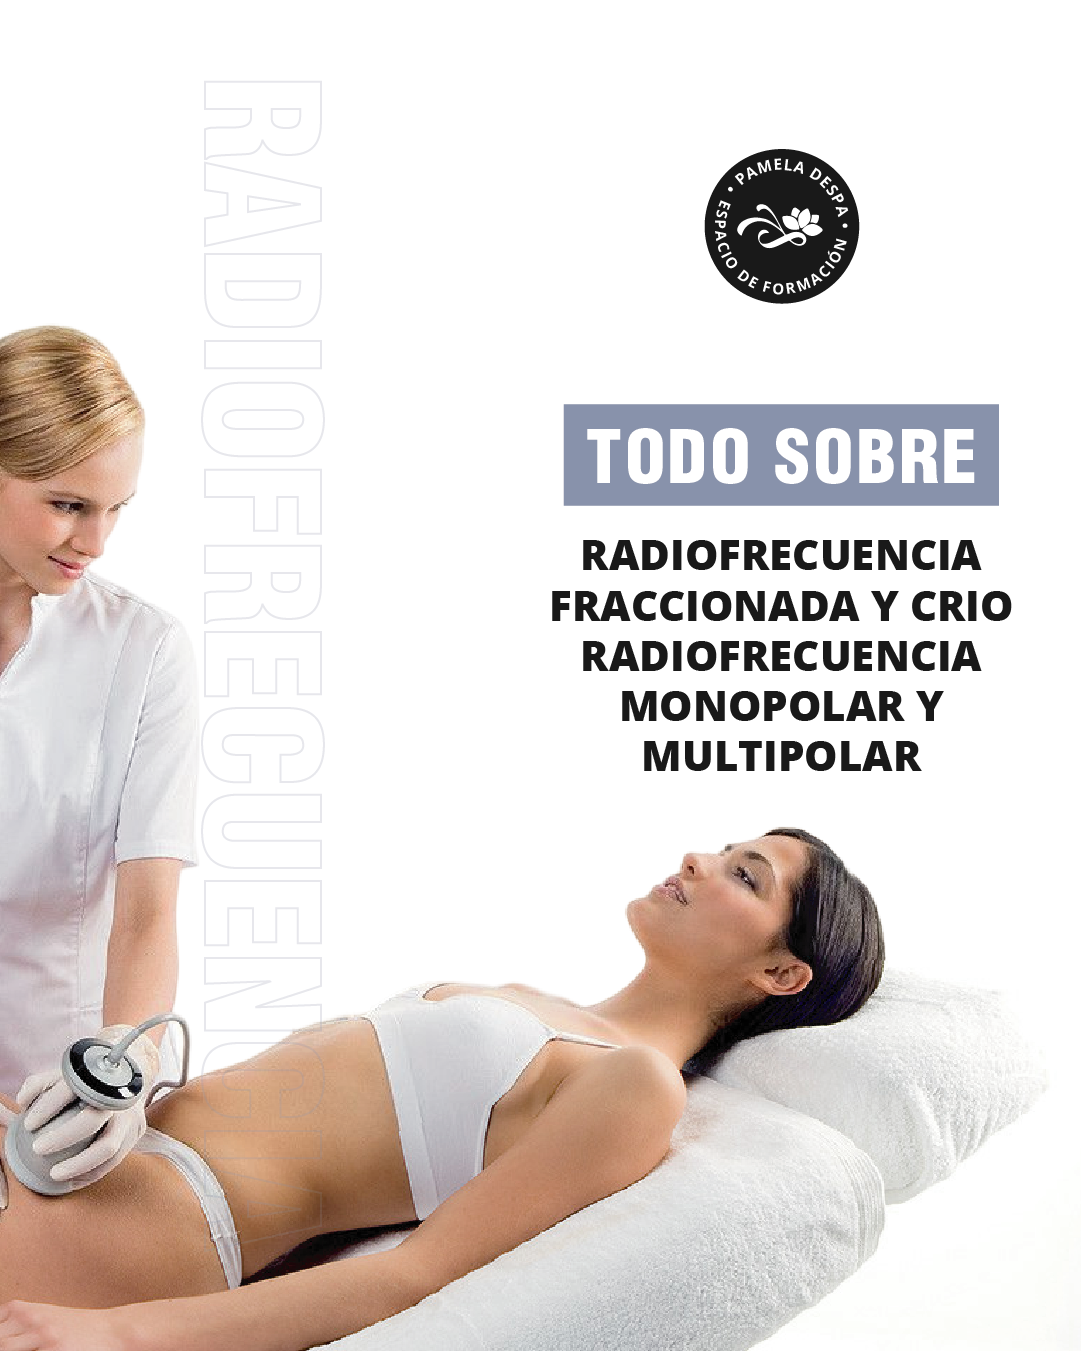 Crio radiofrecuencia y Radiofrecuencia Fraccionada